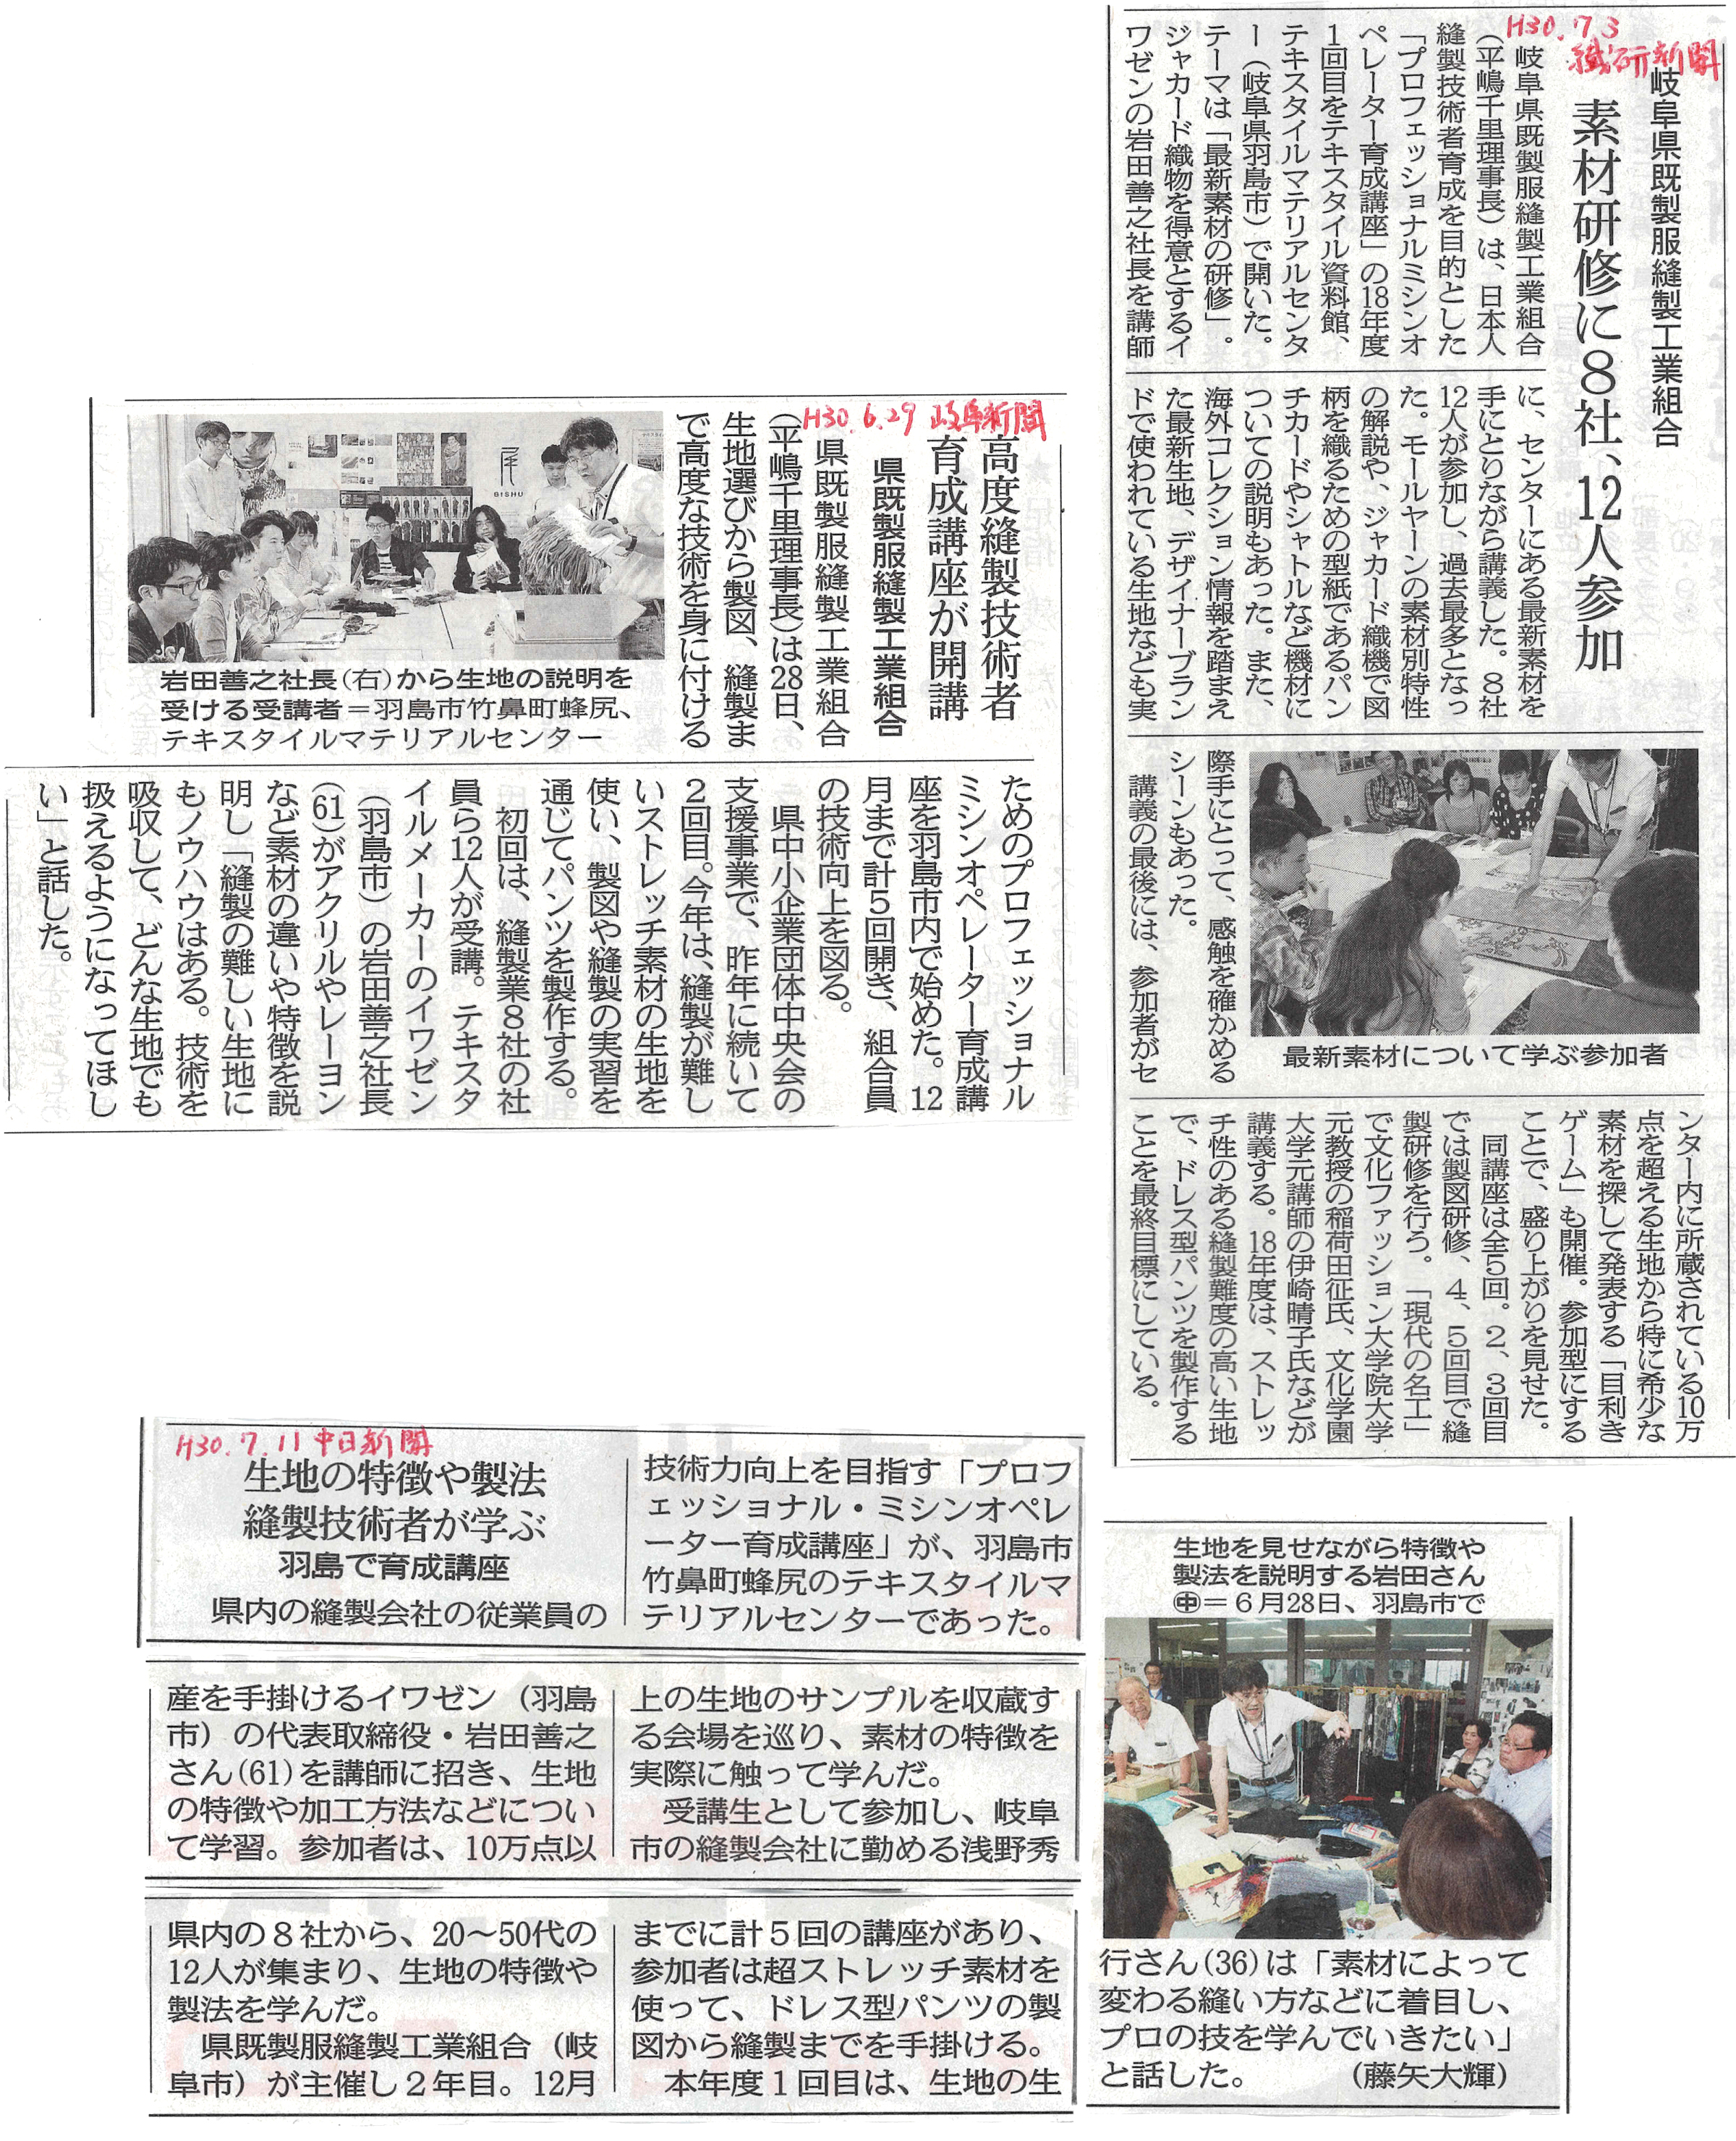 縫製組合の研修会の模様が 繊研新聞 中日新聞 岐阜新聞に掲載されました お知らせ テキスタイルマテリアルセンター